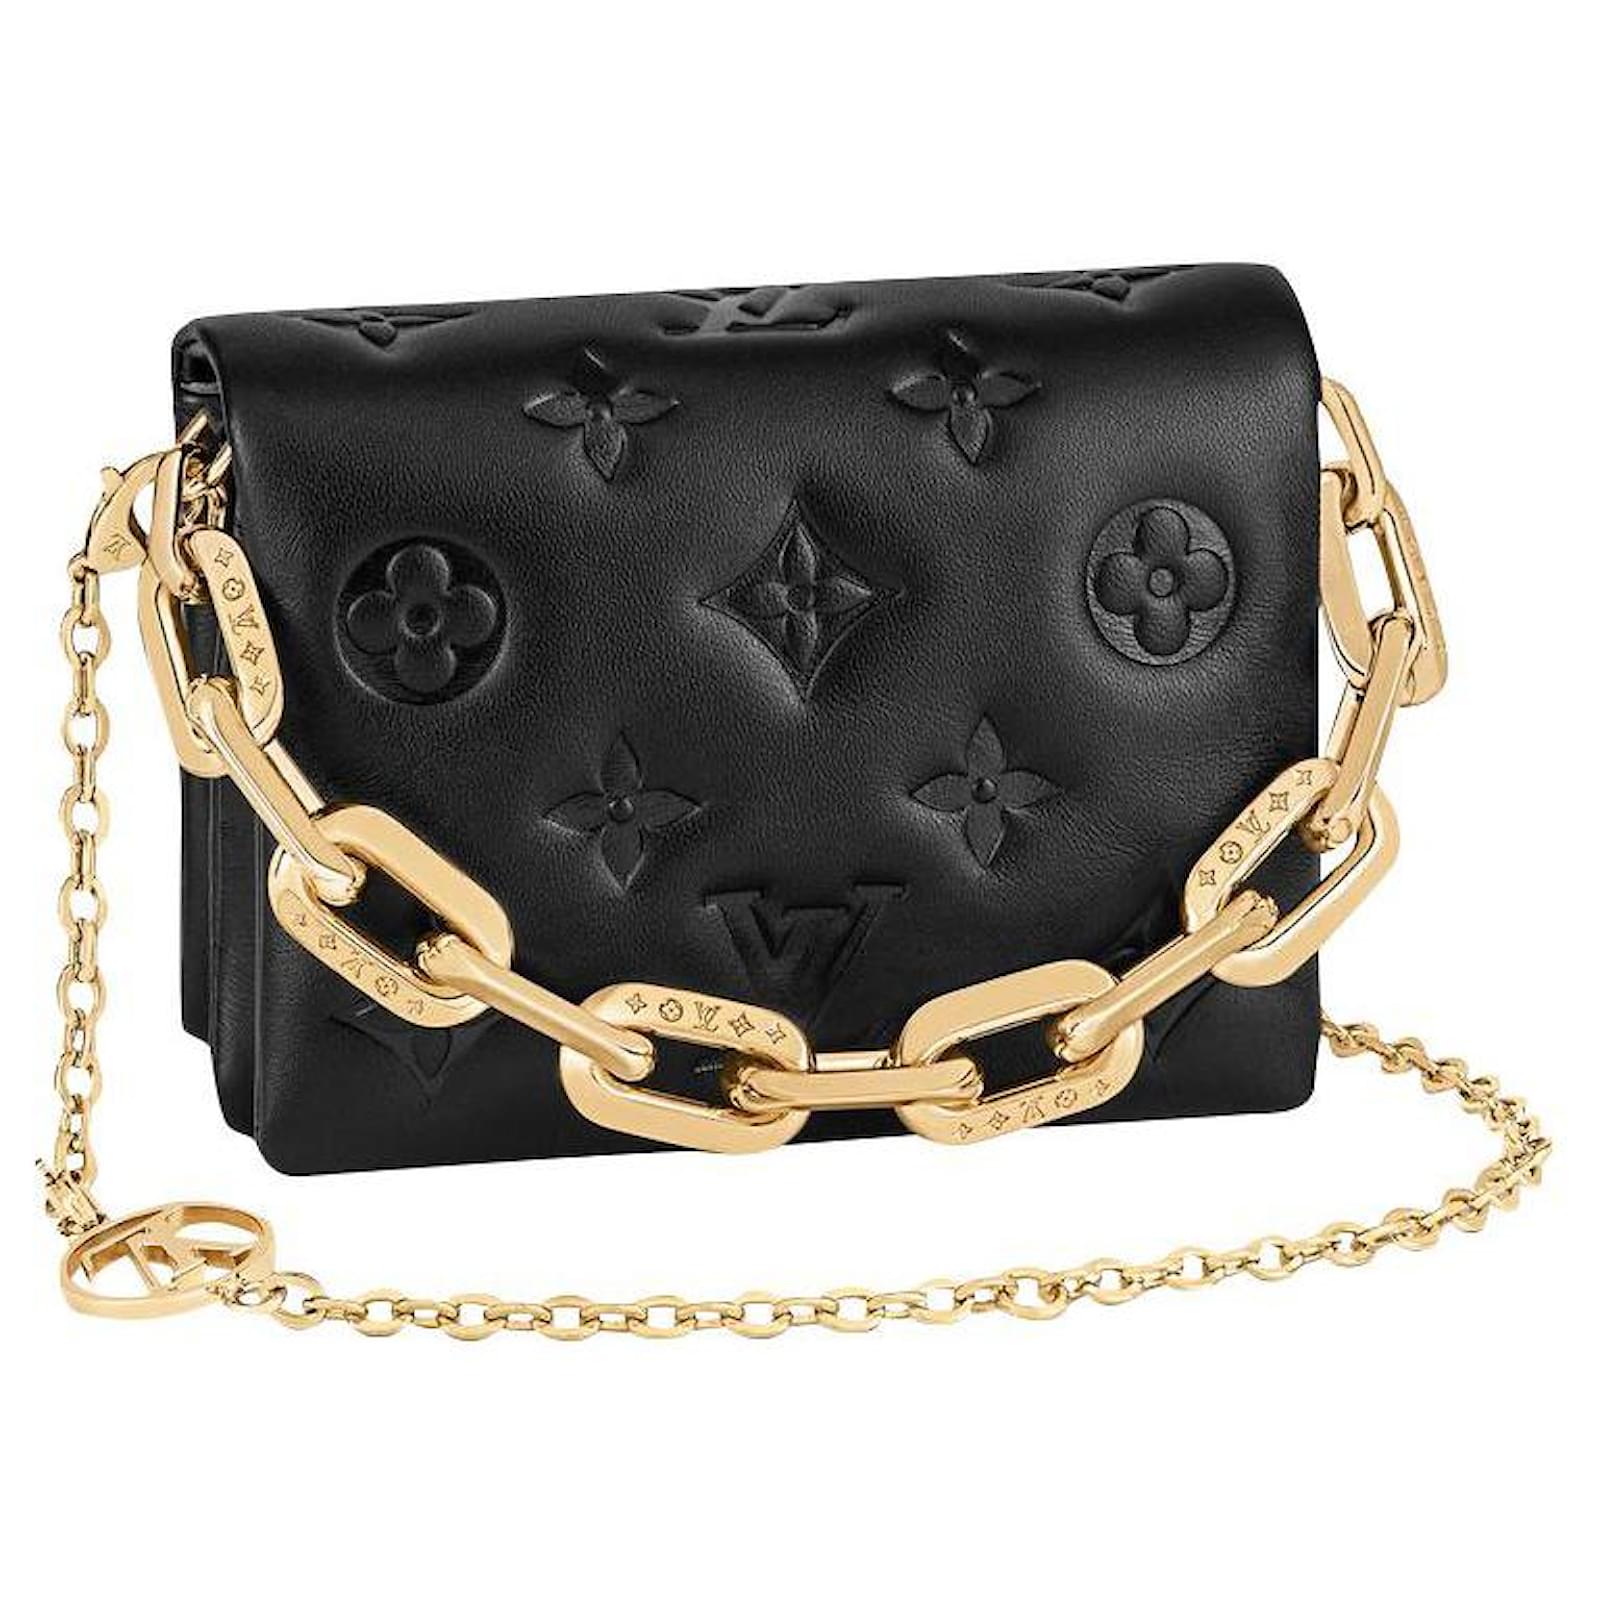 Buy Louis Vuitton Belt Bag Online In India -  India